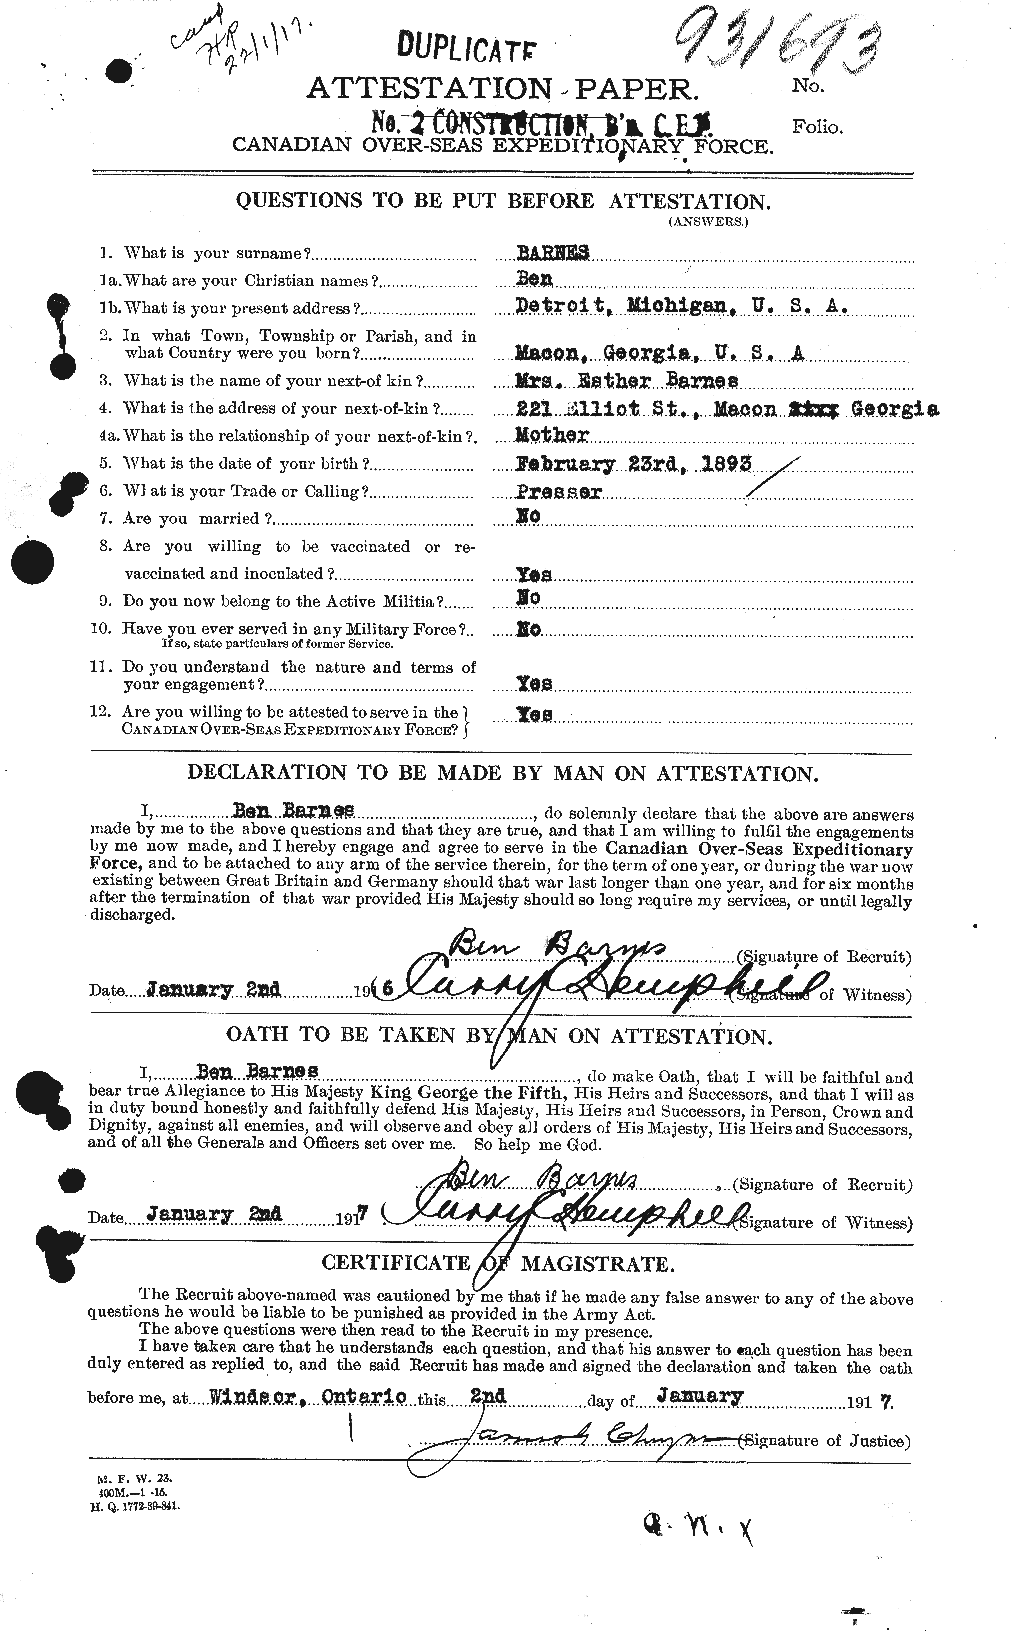 Dossiers du Personnel de la Première Guerre mondiale - CEC 222646a